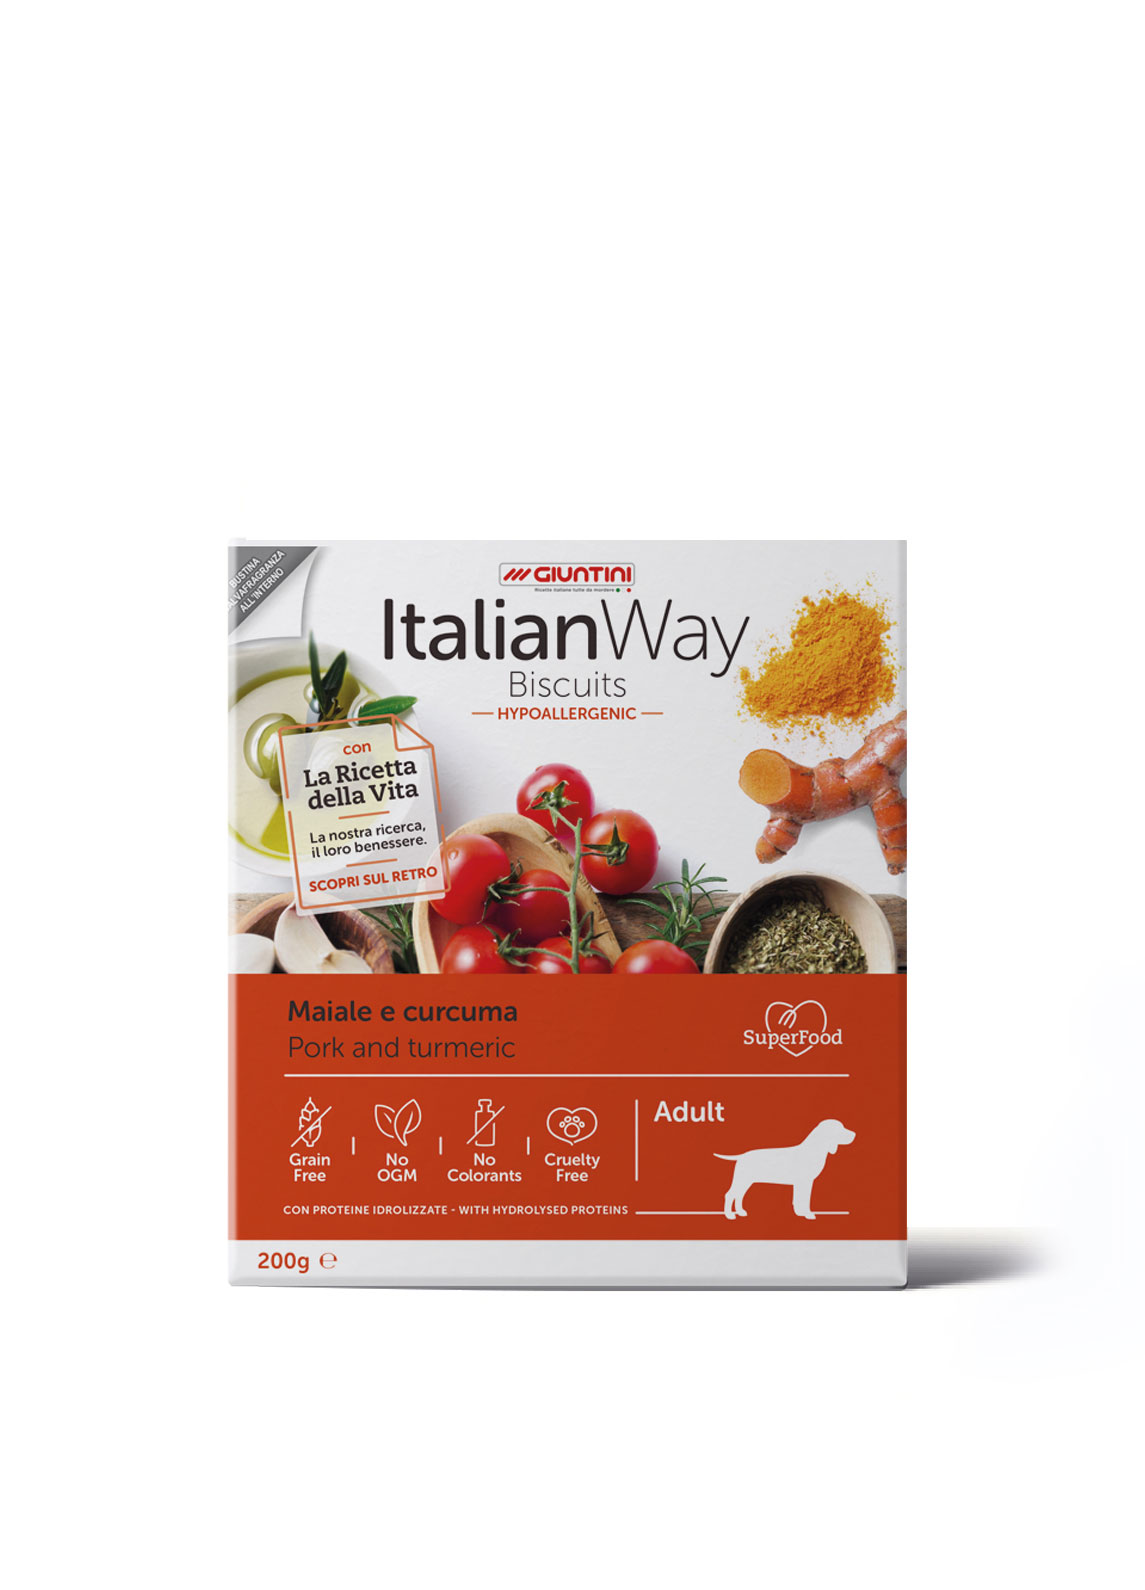 ItalianWay - Biscotti IPOALLERGENICI Senza Cereali per Cani Maiale e Curcuma Biscuits 200g